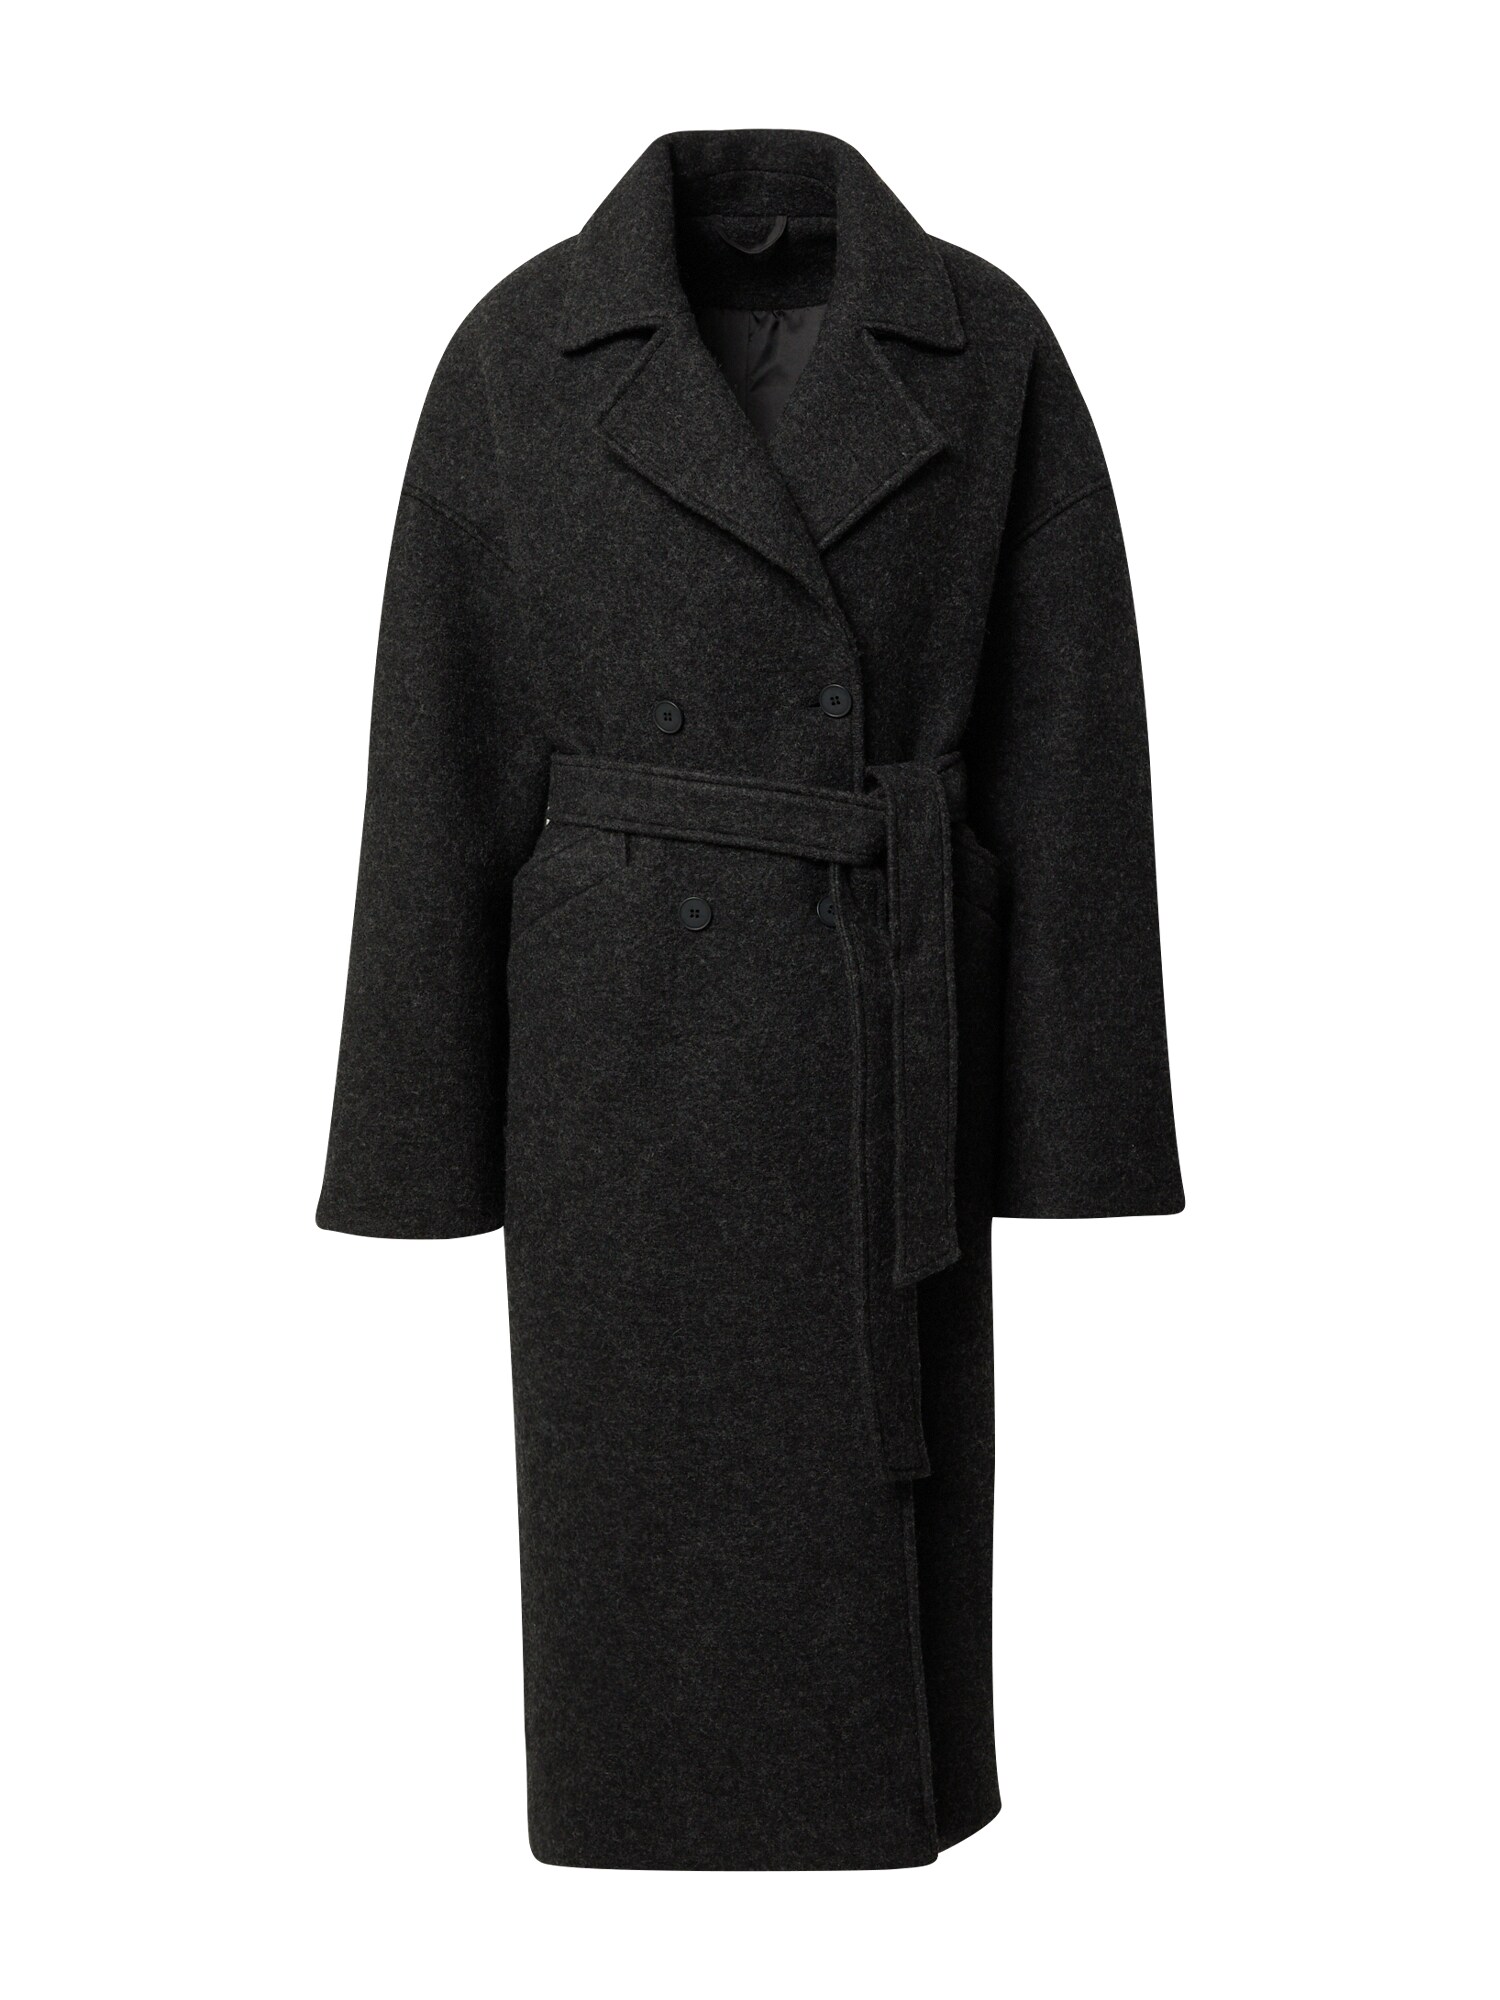 Prechodný kabát Laila čierna A LOT LESS